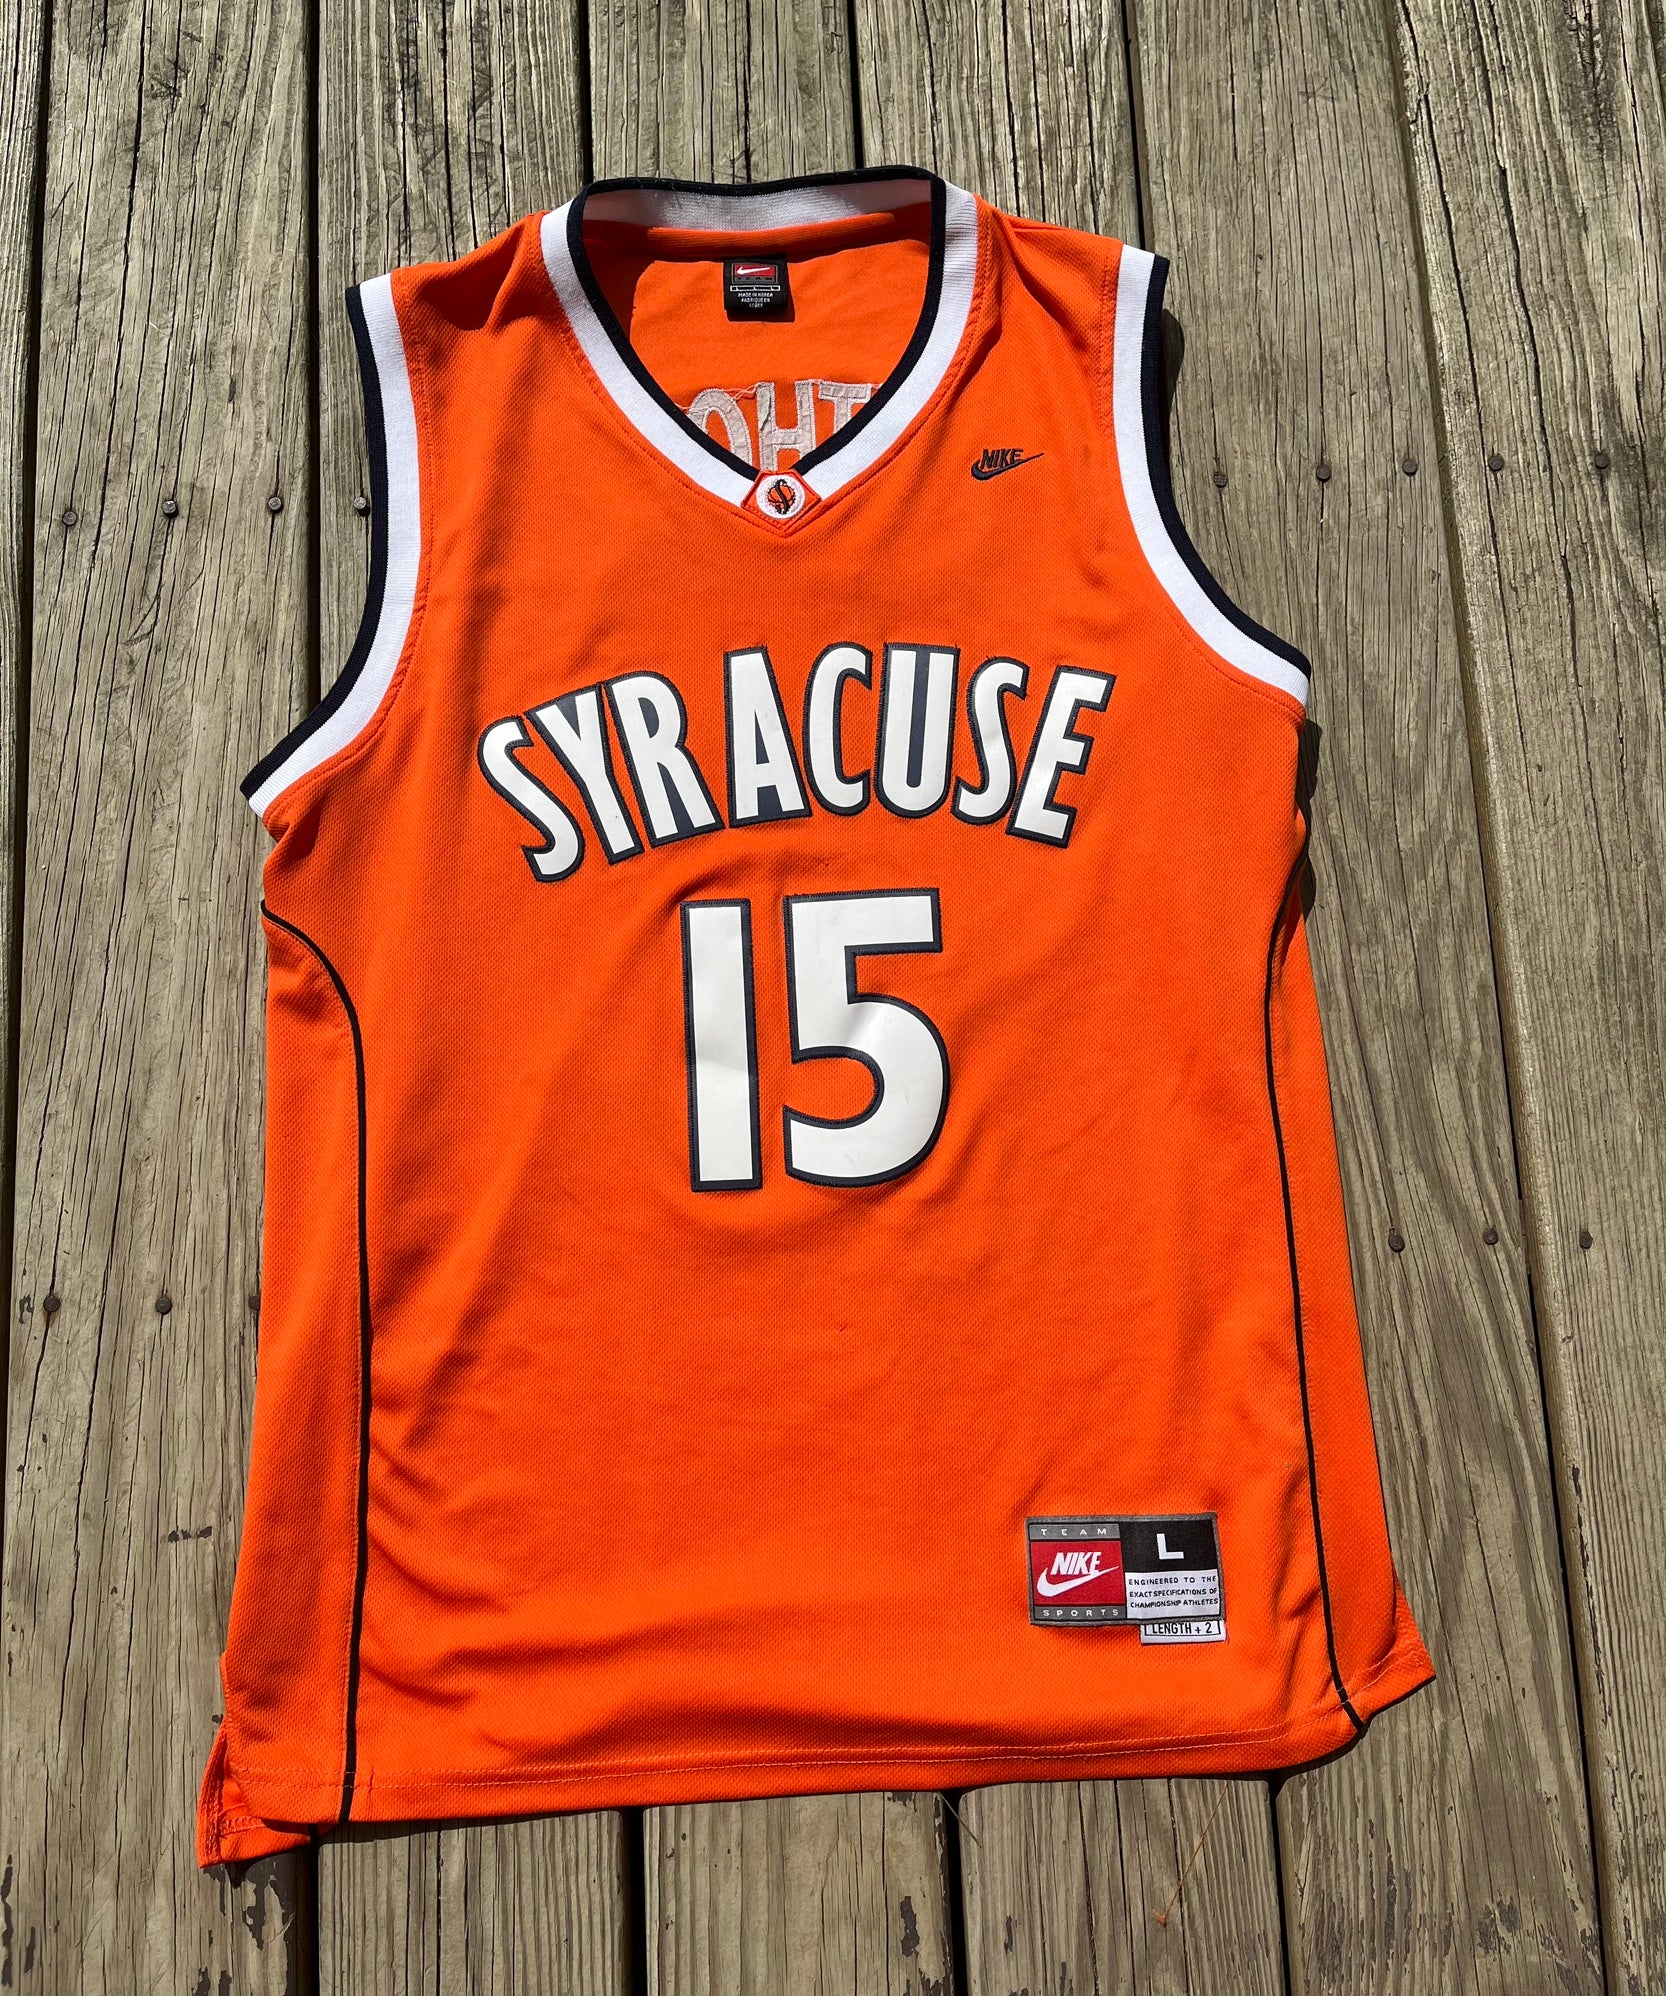 Nike Black Carmelo Anthony Syracuse Jersey Extra Large